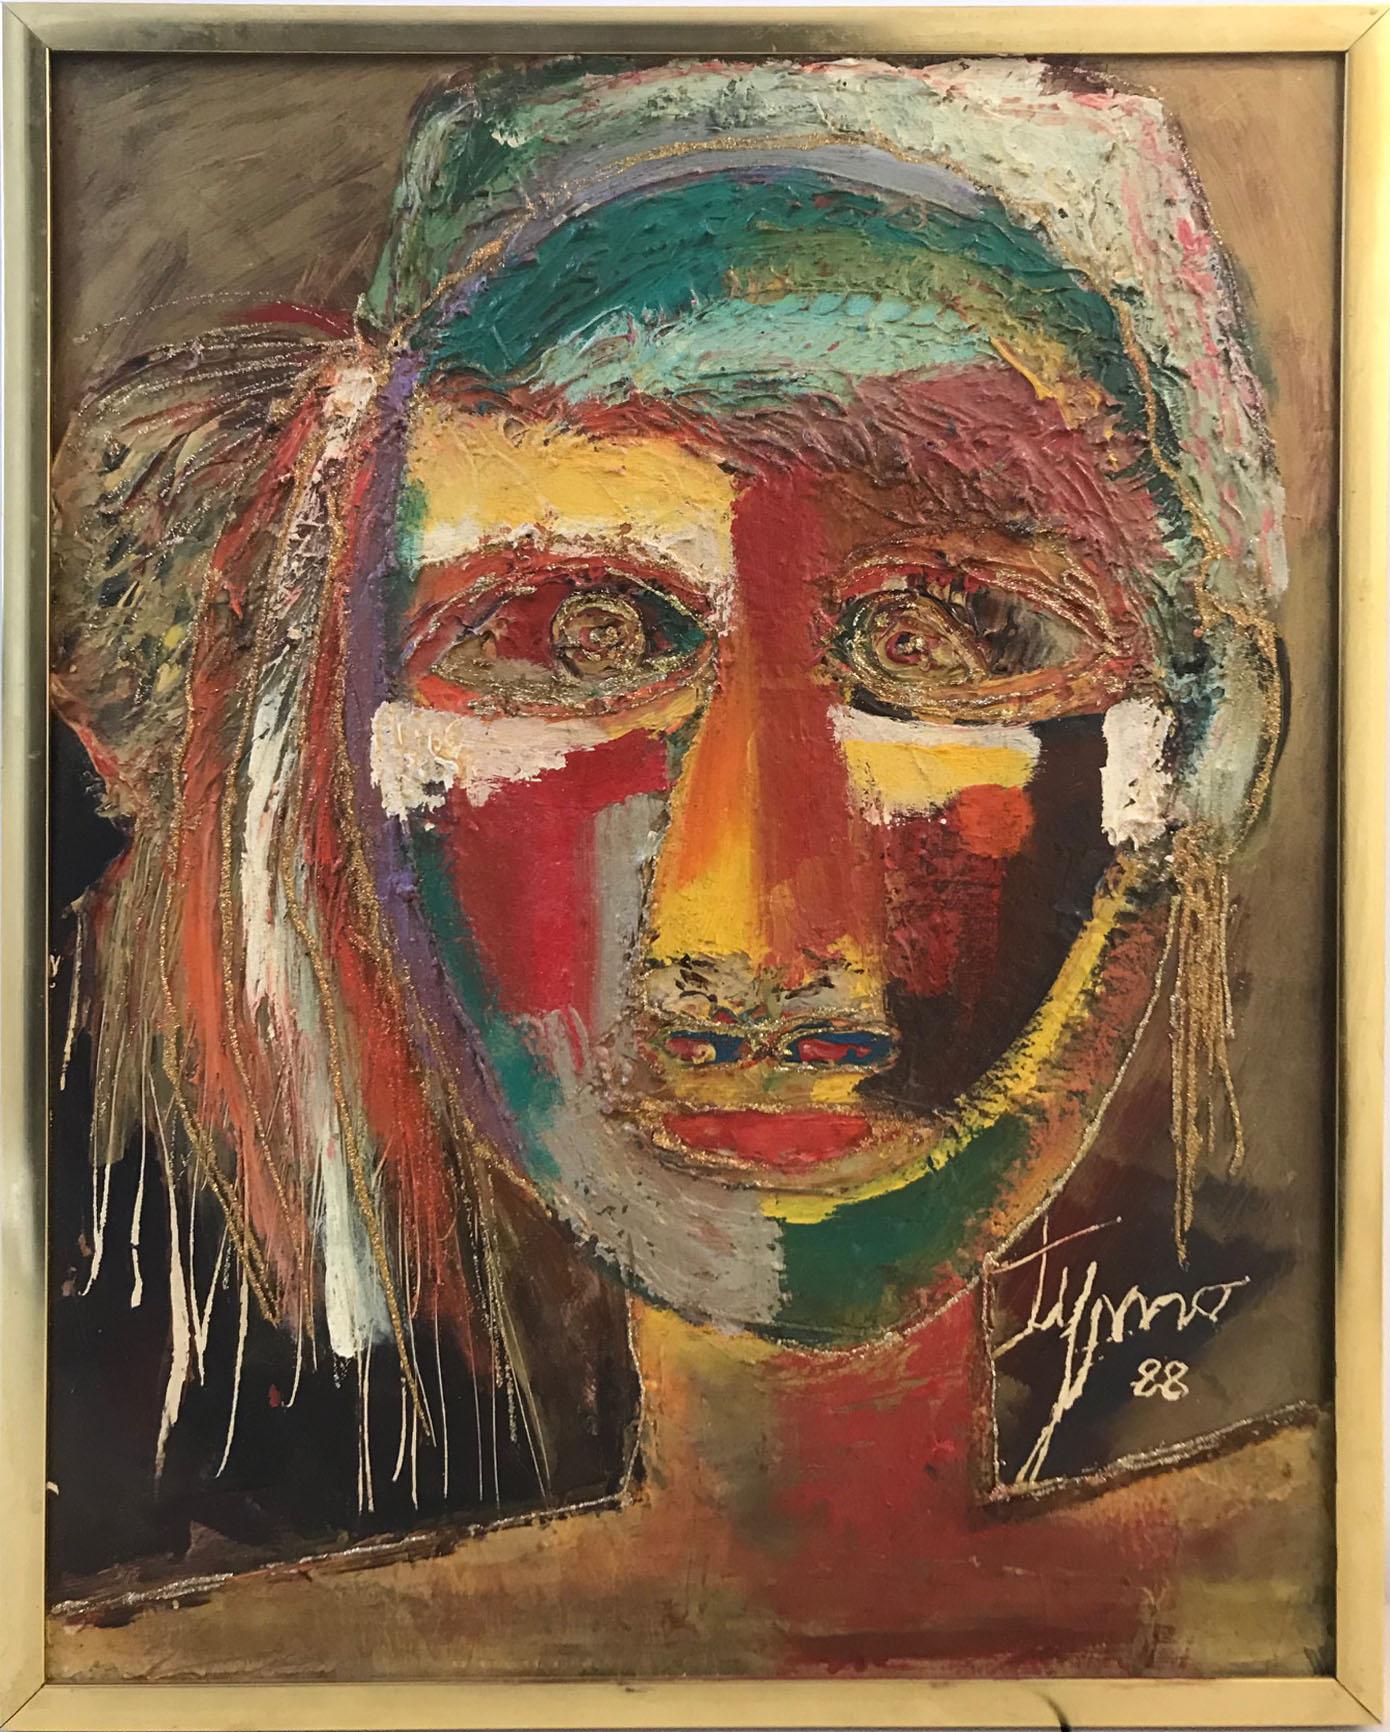 Timothee Pierre (Tymo) Portrait Painting – Indisches afrikanisches Gesicht Frau